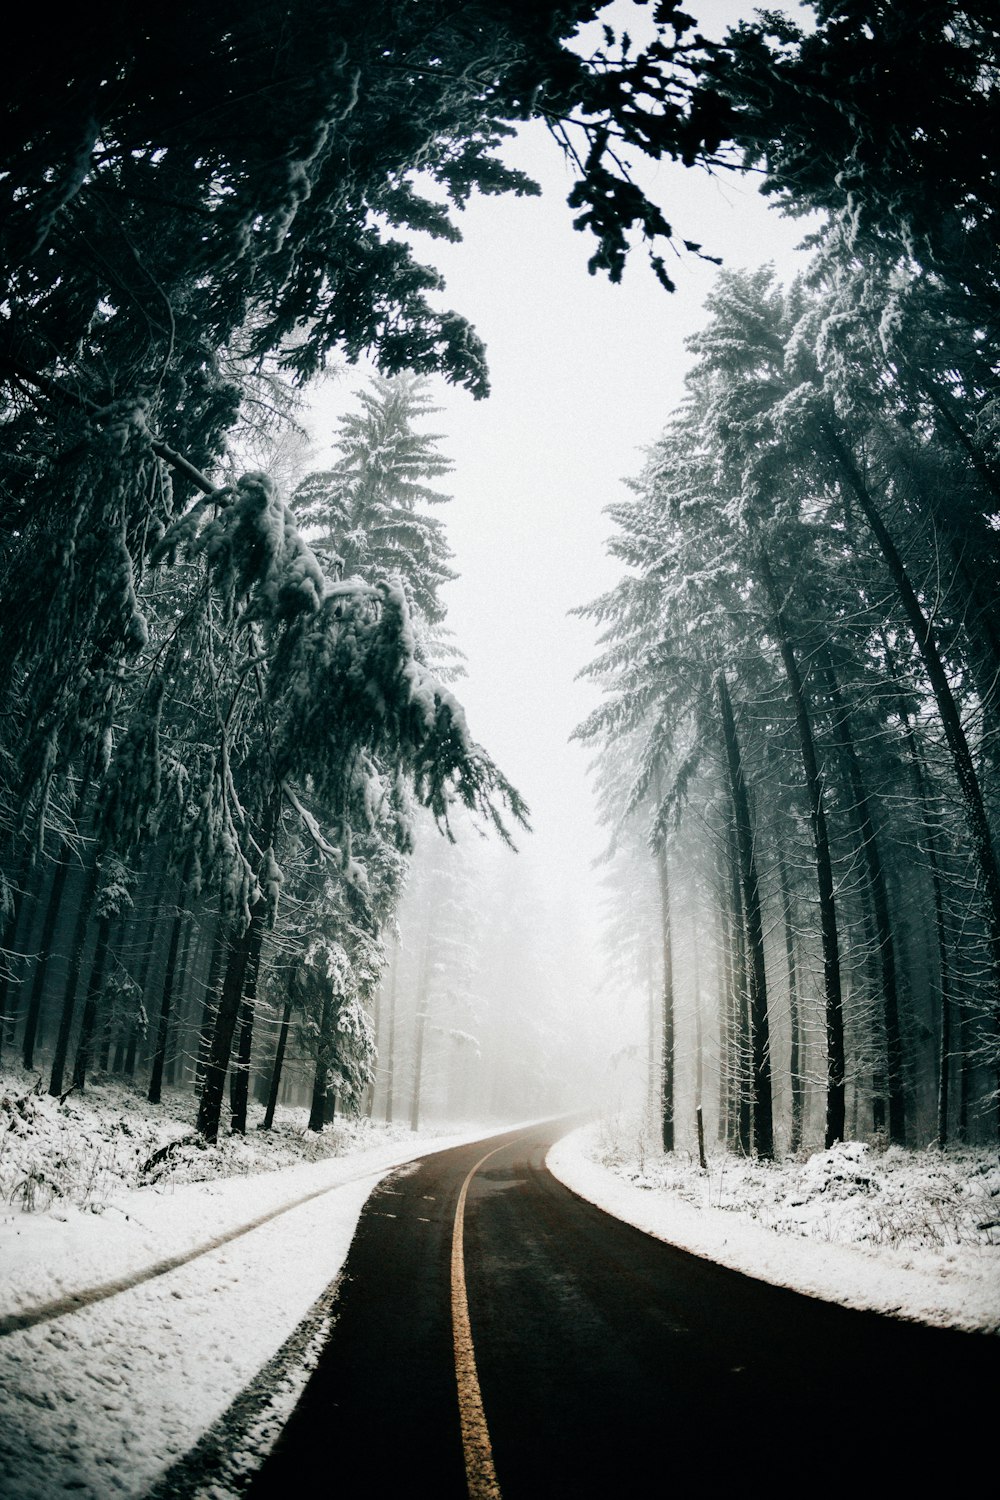 strada asfaltata tra gli alberi coperti di neve